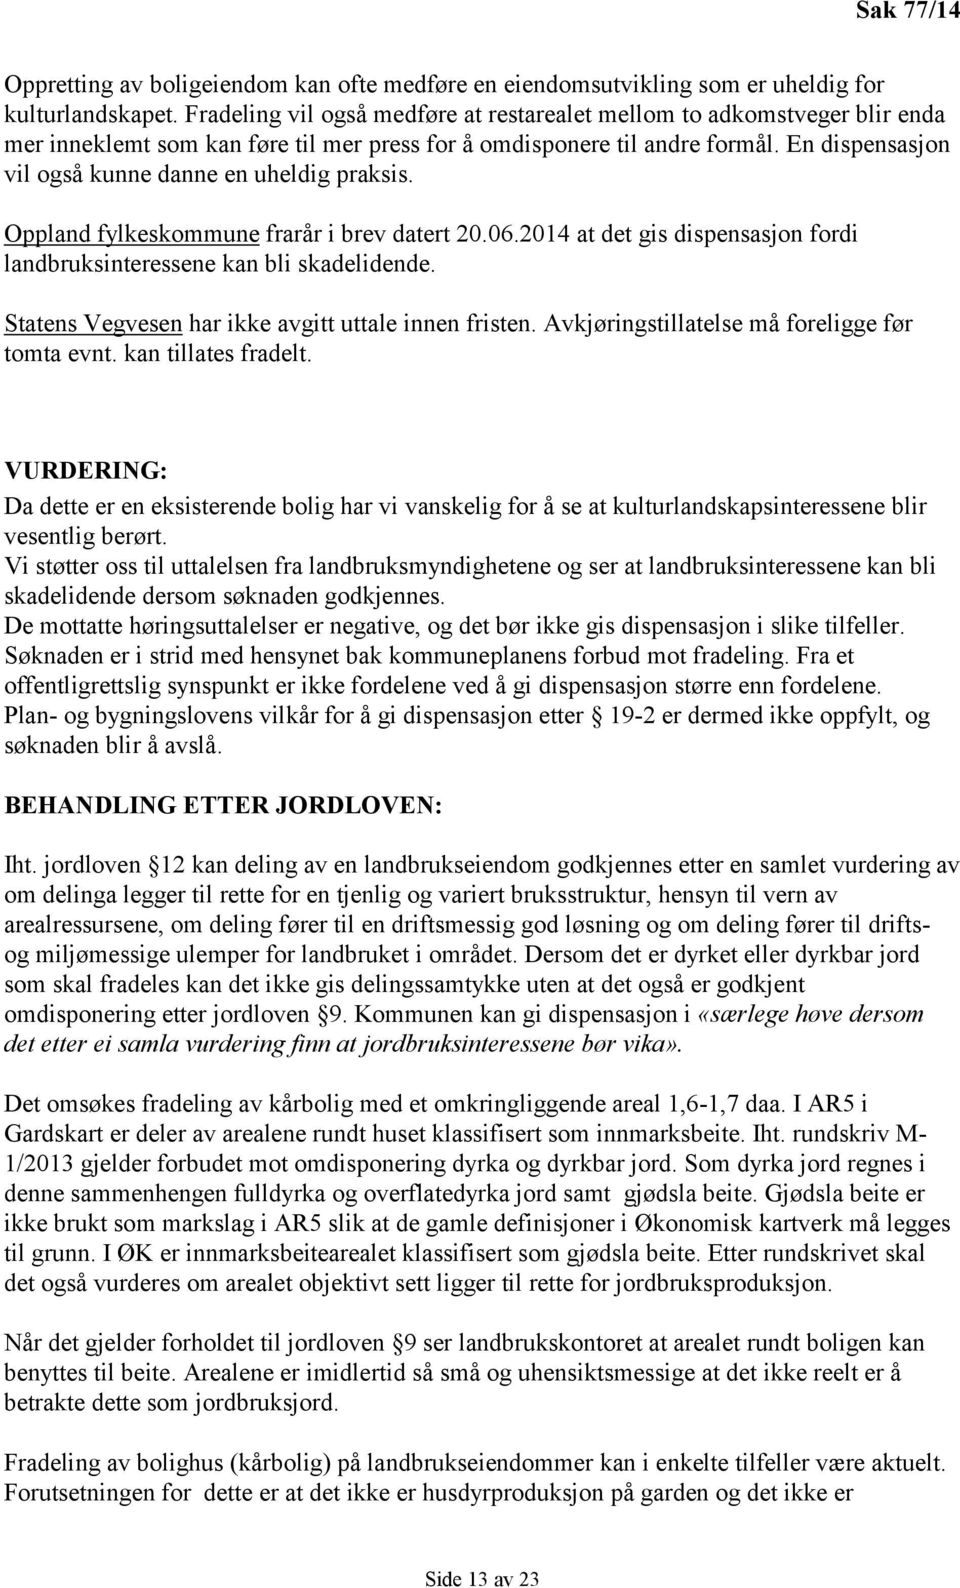 En dispensasjon vil også kunne danne en uheldig praksis. Oppland fylkeskommune frarår i brev datert 20.06.2014 at det gis dispensasjon fordi landbruksinteressene kan bli skadelidende.